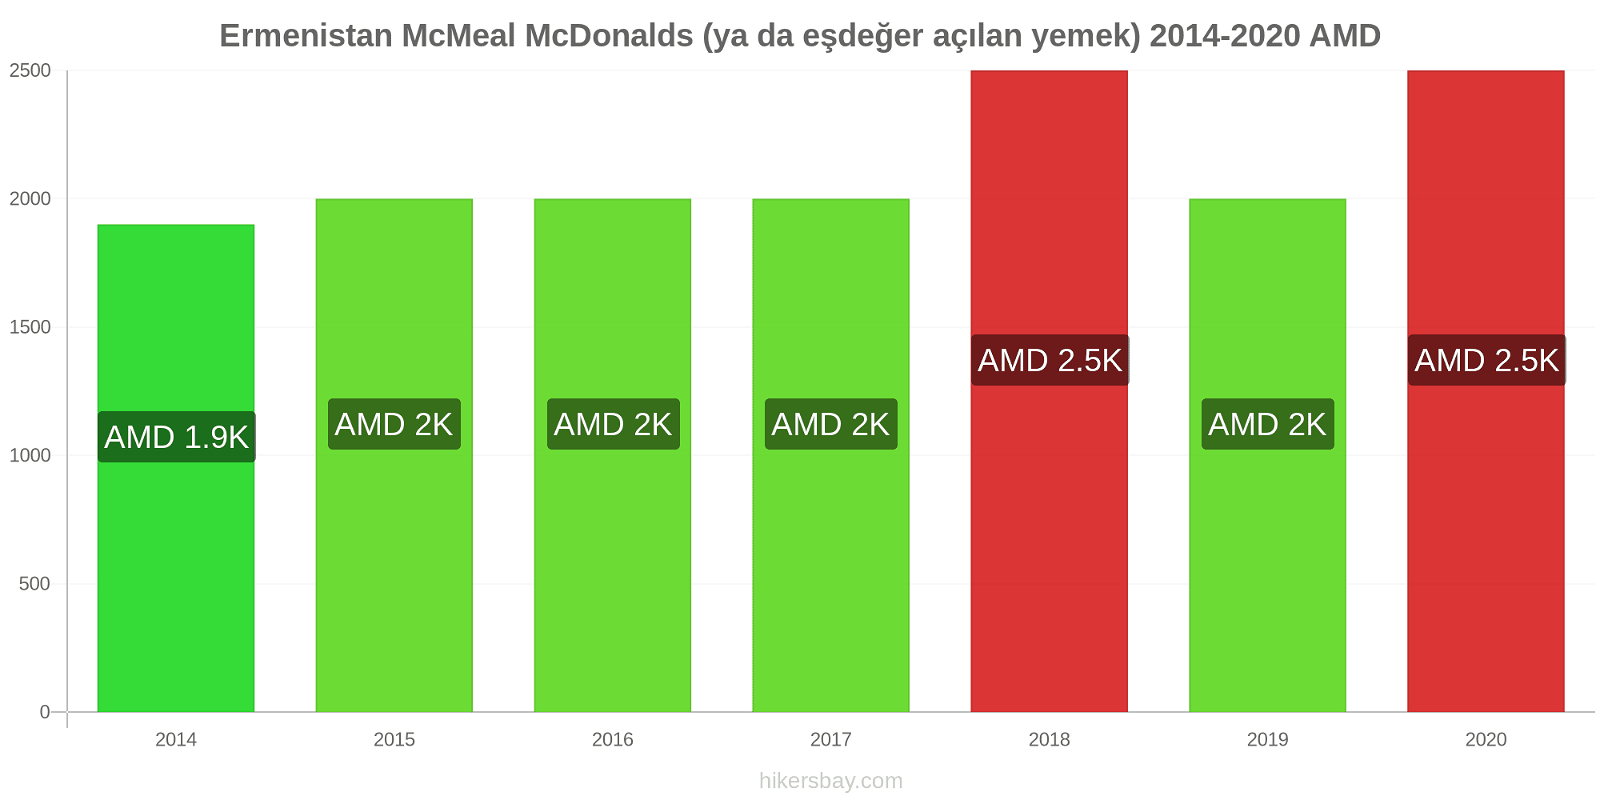 Ermenistan fiyat değişiklikleri McMeal McDonalds (ya da eşdeğer açılan yemek) hikersbay.com